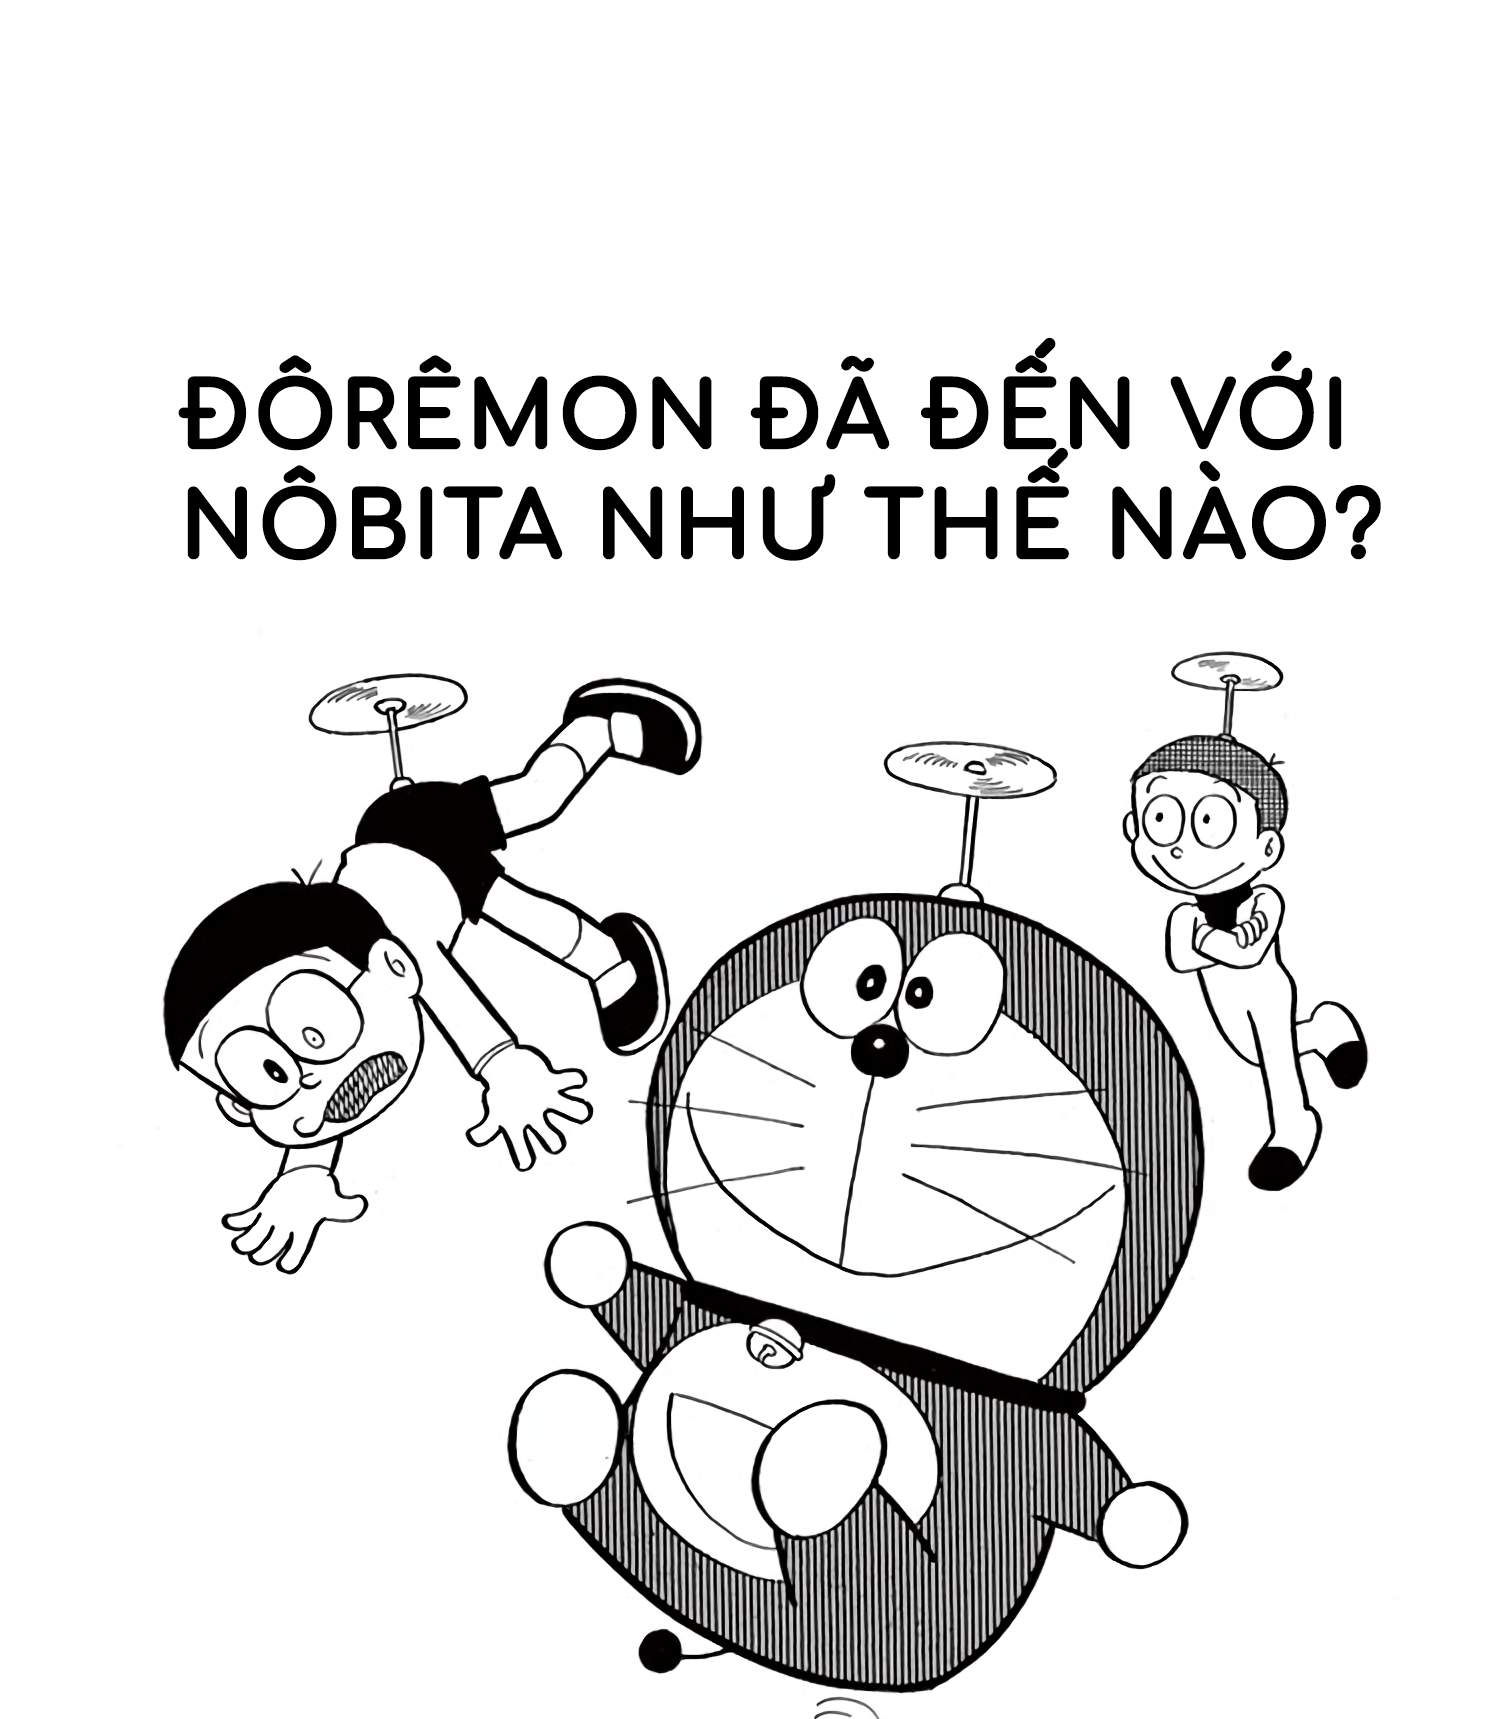 Wikia Doraemon tiếng Việt | Fandom là nơi cung cấp đầy đủ thông tin về loạt phim này. Chỉ với một vài click chuột, bạn sẽ tìm được những chi tiết thú vị mà bạn chưa biết về Doraemon và những người bạn đến từ tương lai. Khám phá ngay để bổ sung kiến thức và có những giây phút giải trí thú vị.